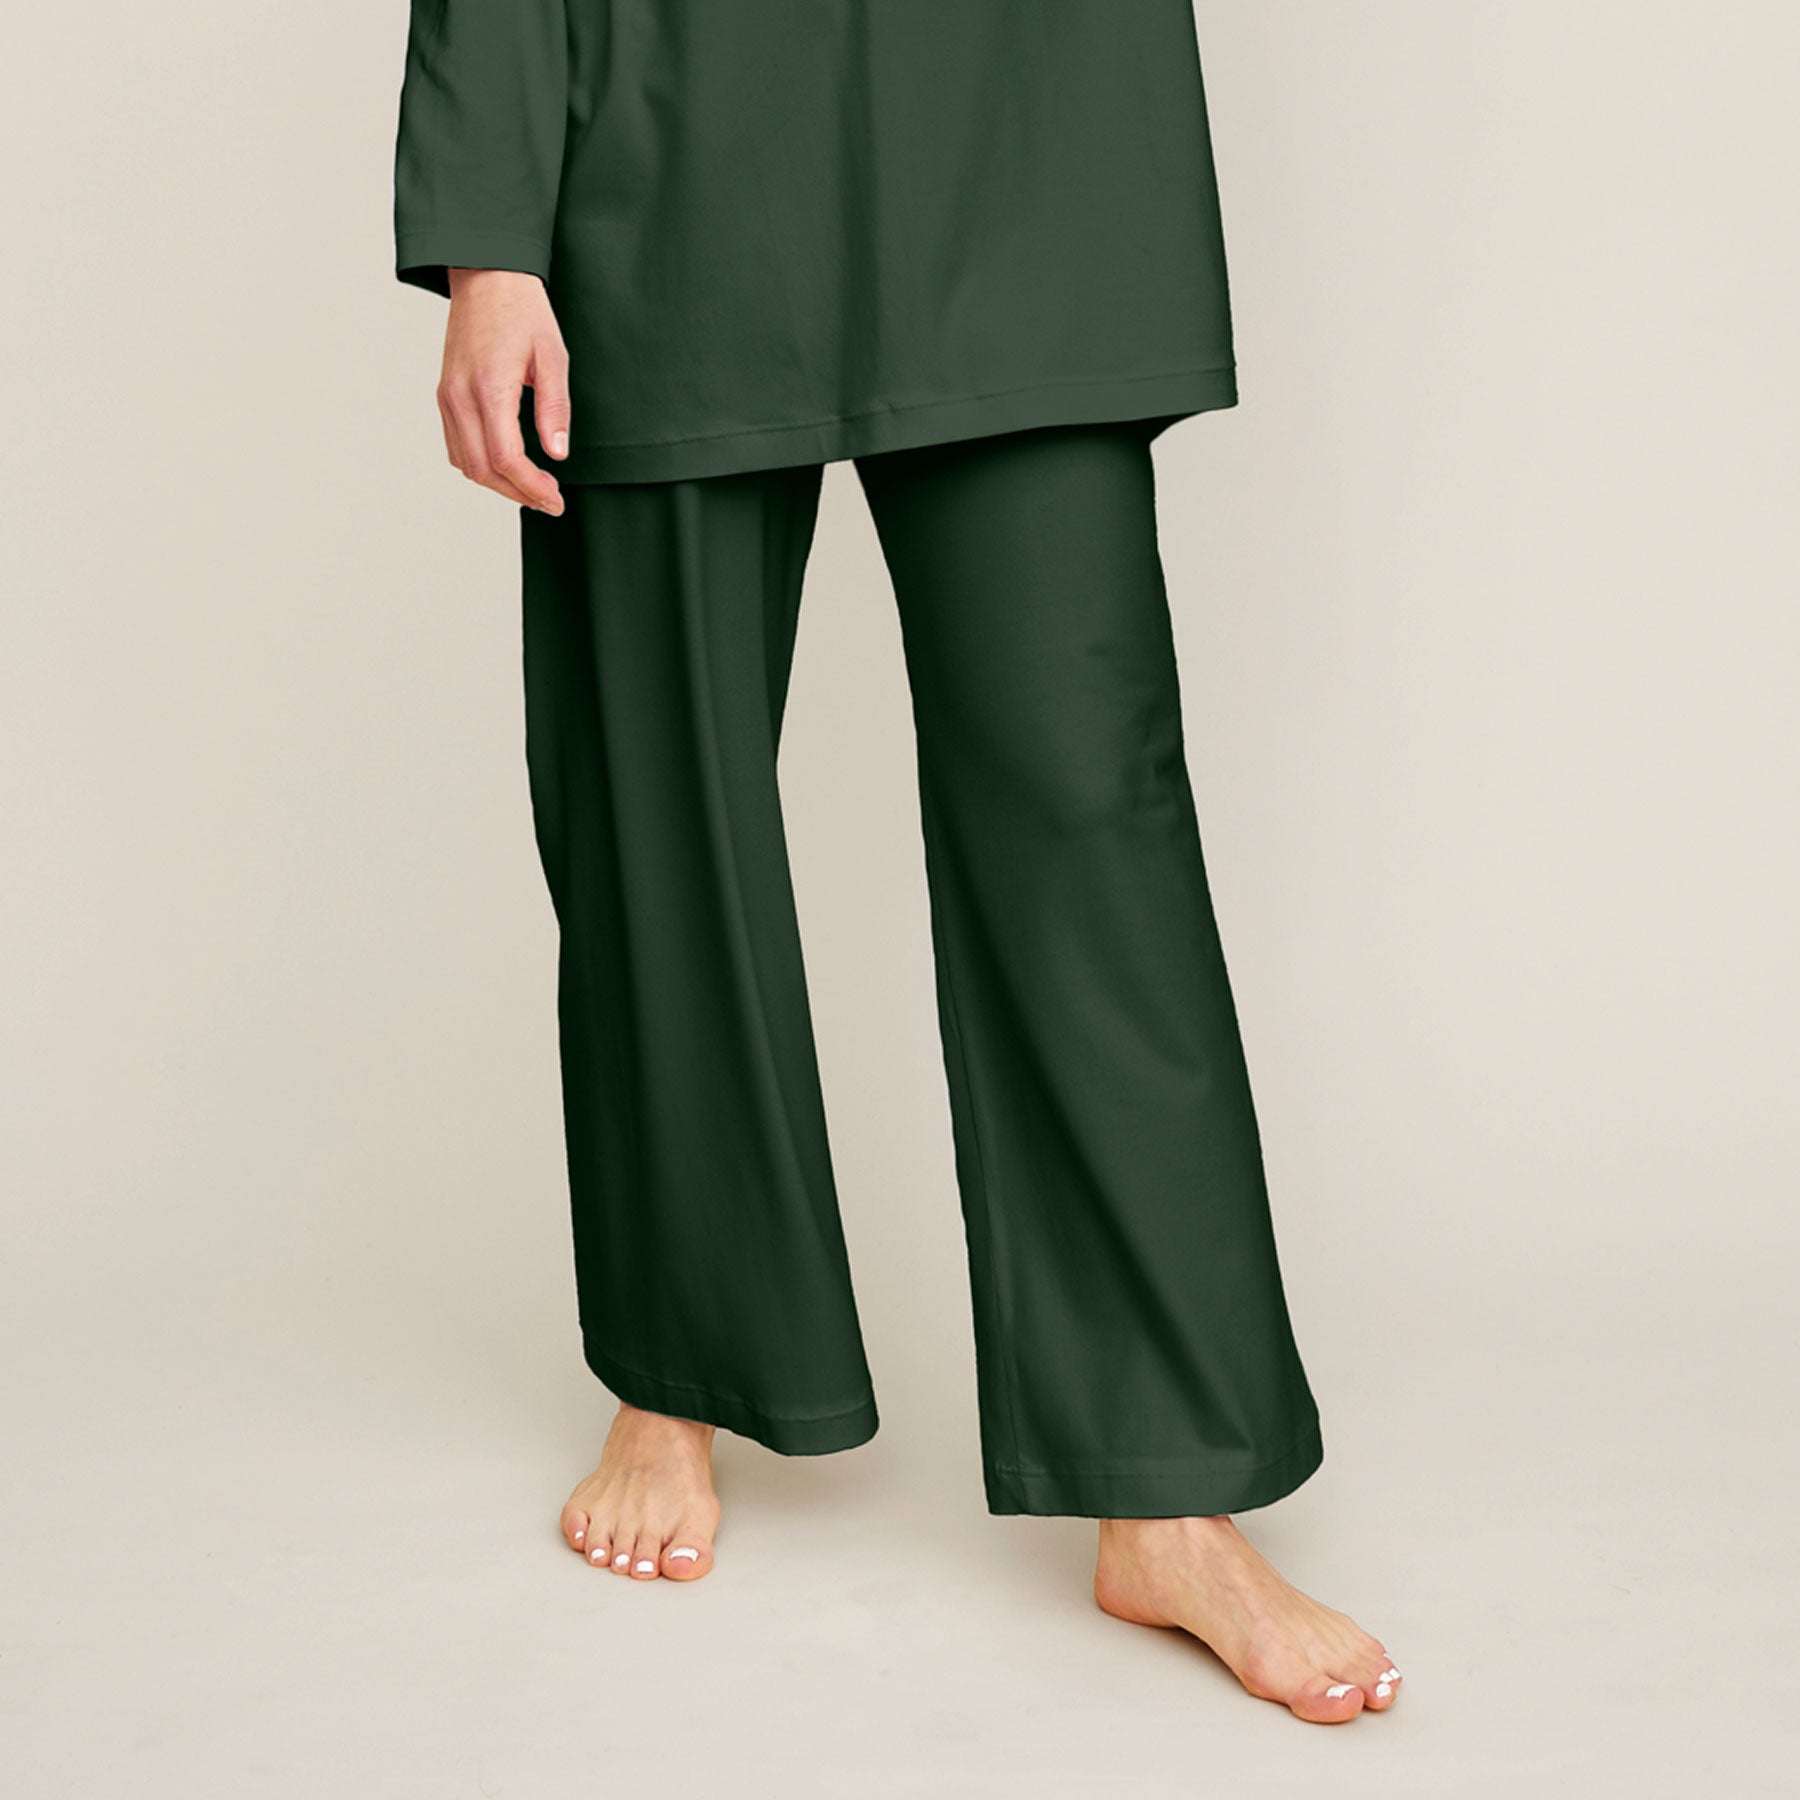 Lähikuva vihreistä pyjamahousuista. Housut ovat malliltansa väljät ja lahkeet ovat leveät.